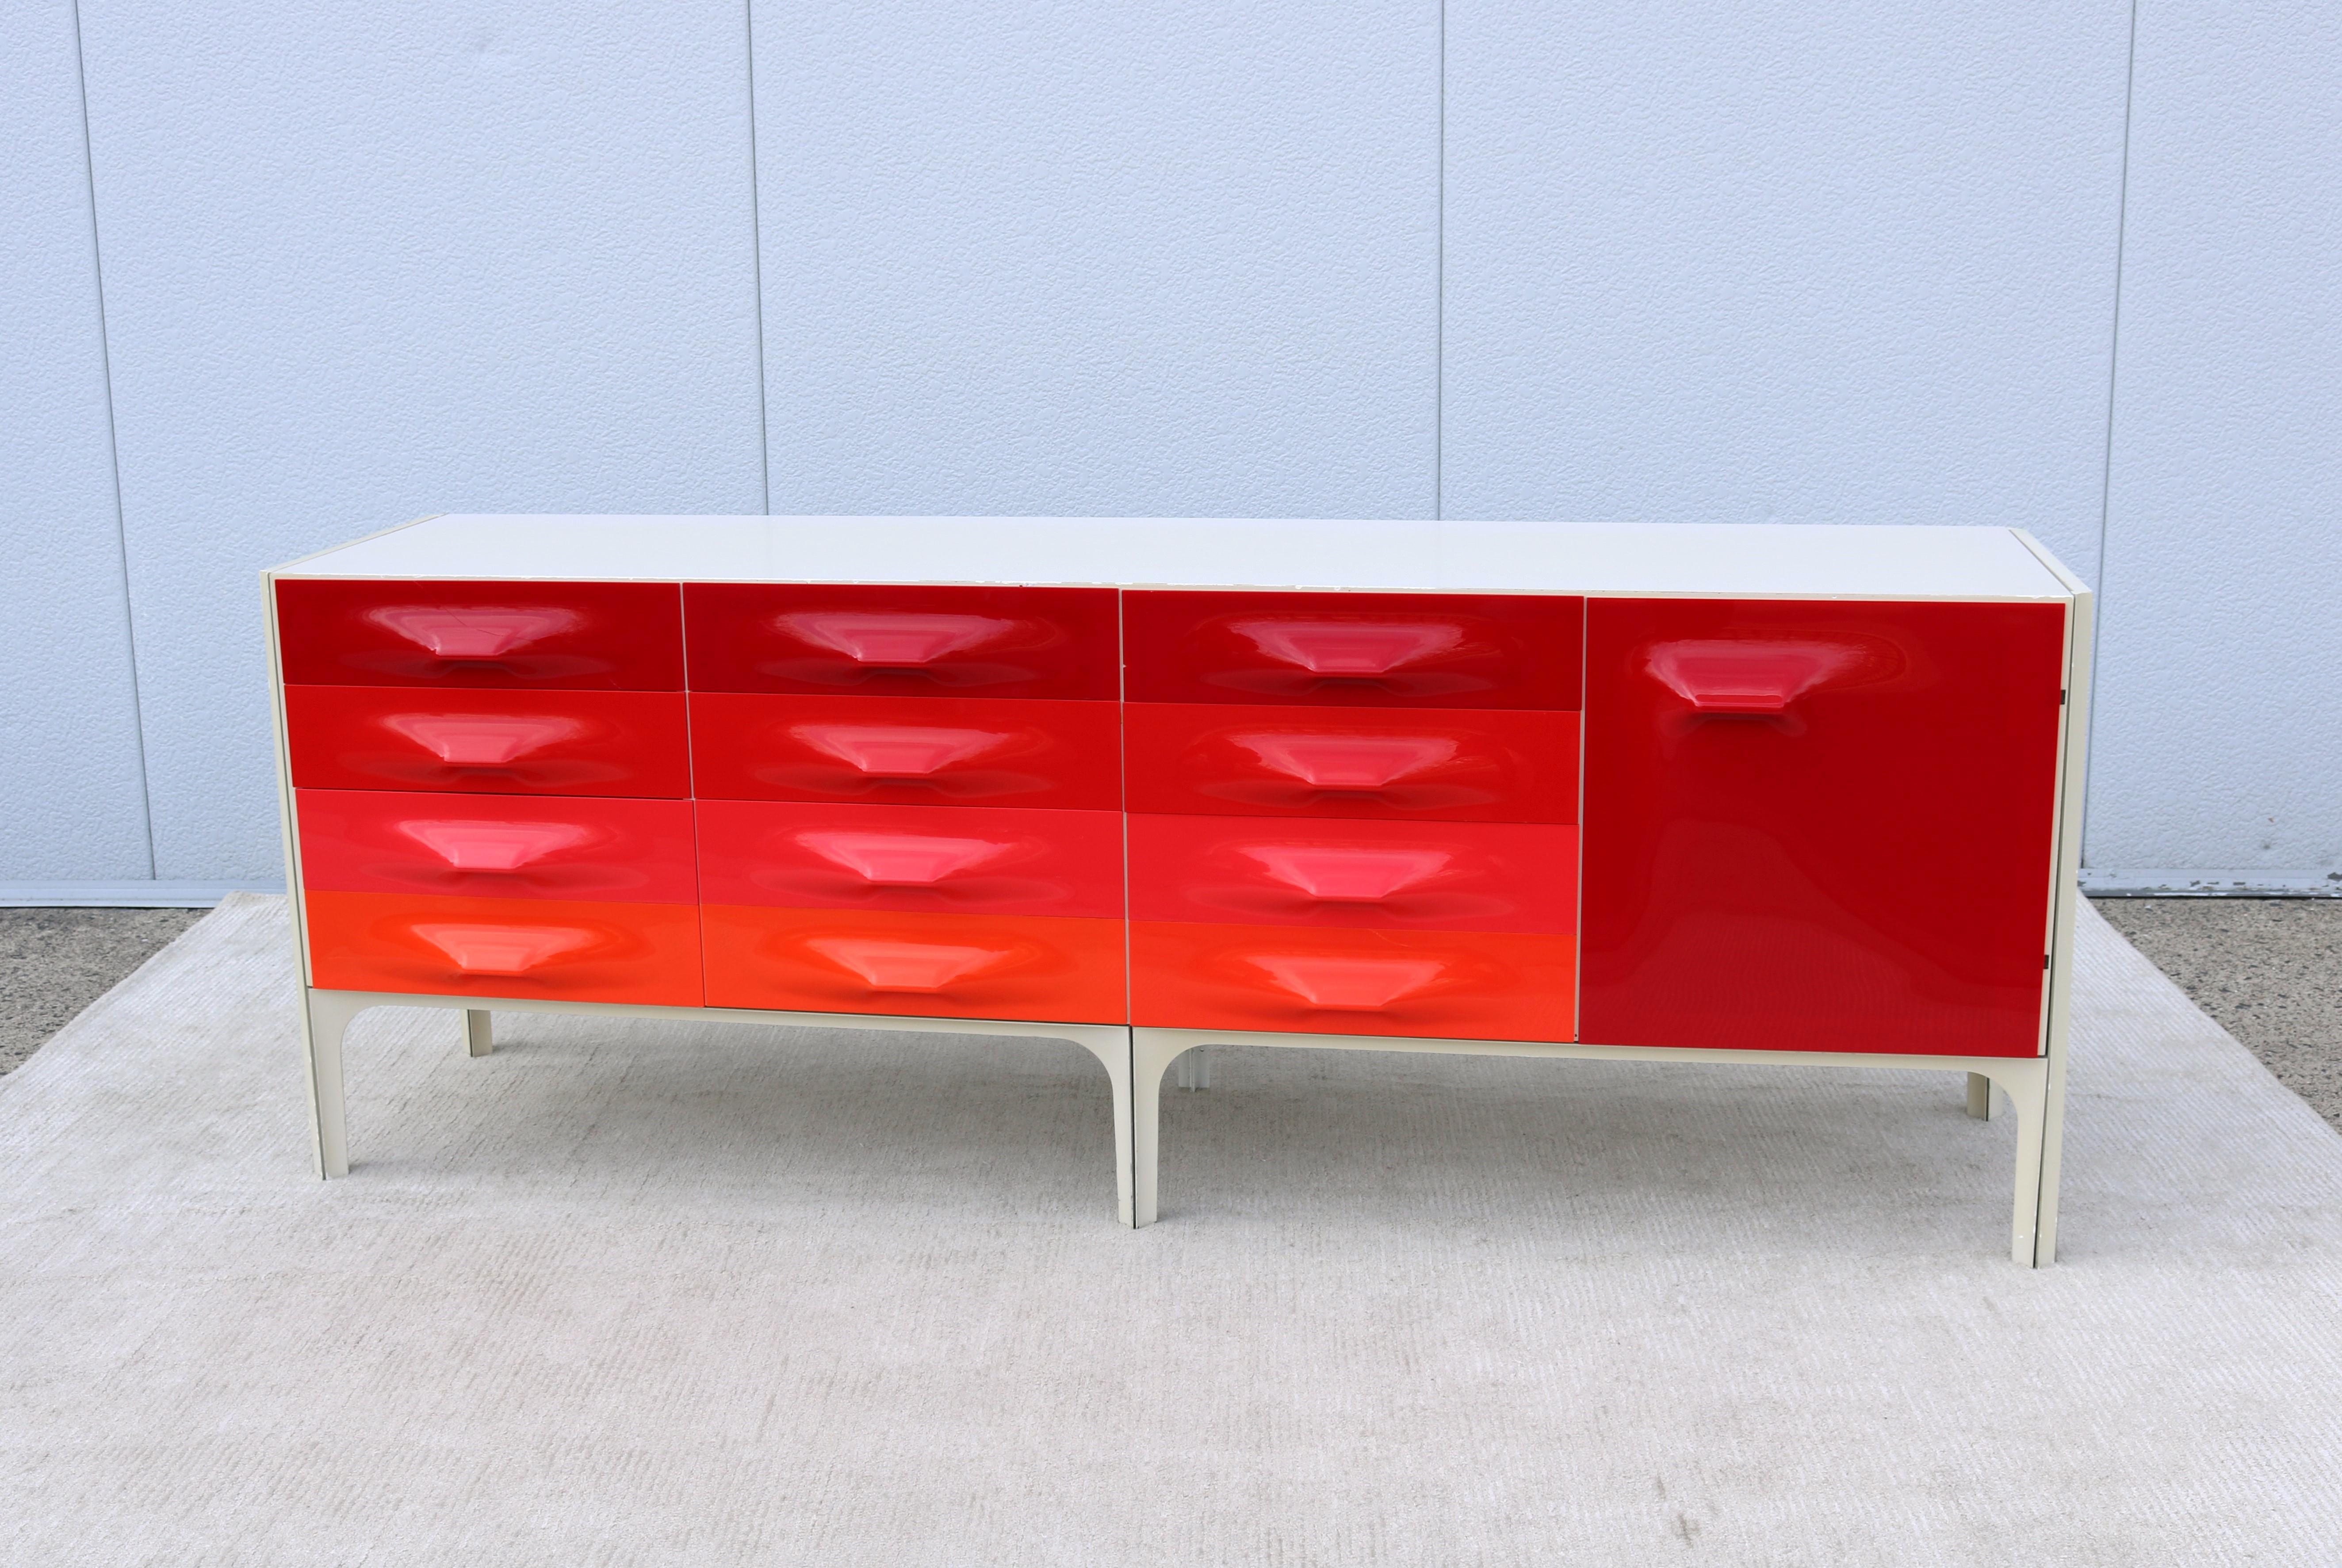 Fabuleuse grande version de la classique crédence ou commode DF2000 de Raymond Loewy.
Comprenant neuf tiroirs et un meuble, les façades des tiroirs en plastique moulé sont organisées dans les bandes graduées de couleurs pop art, du rouge à l'orange,